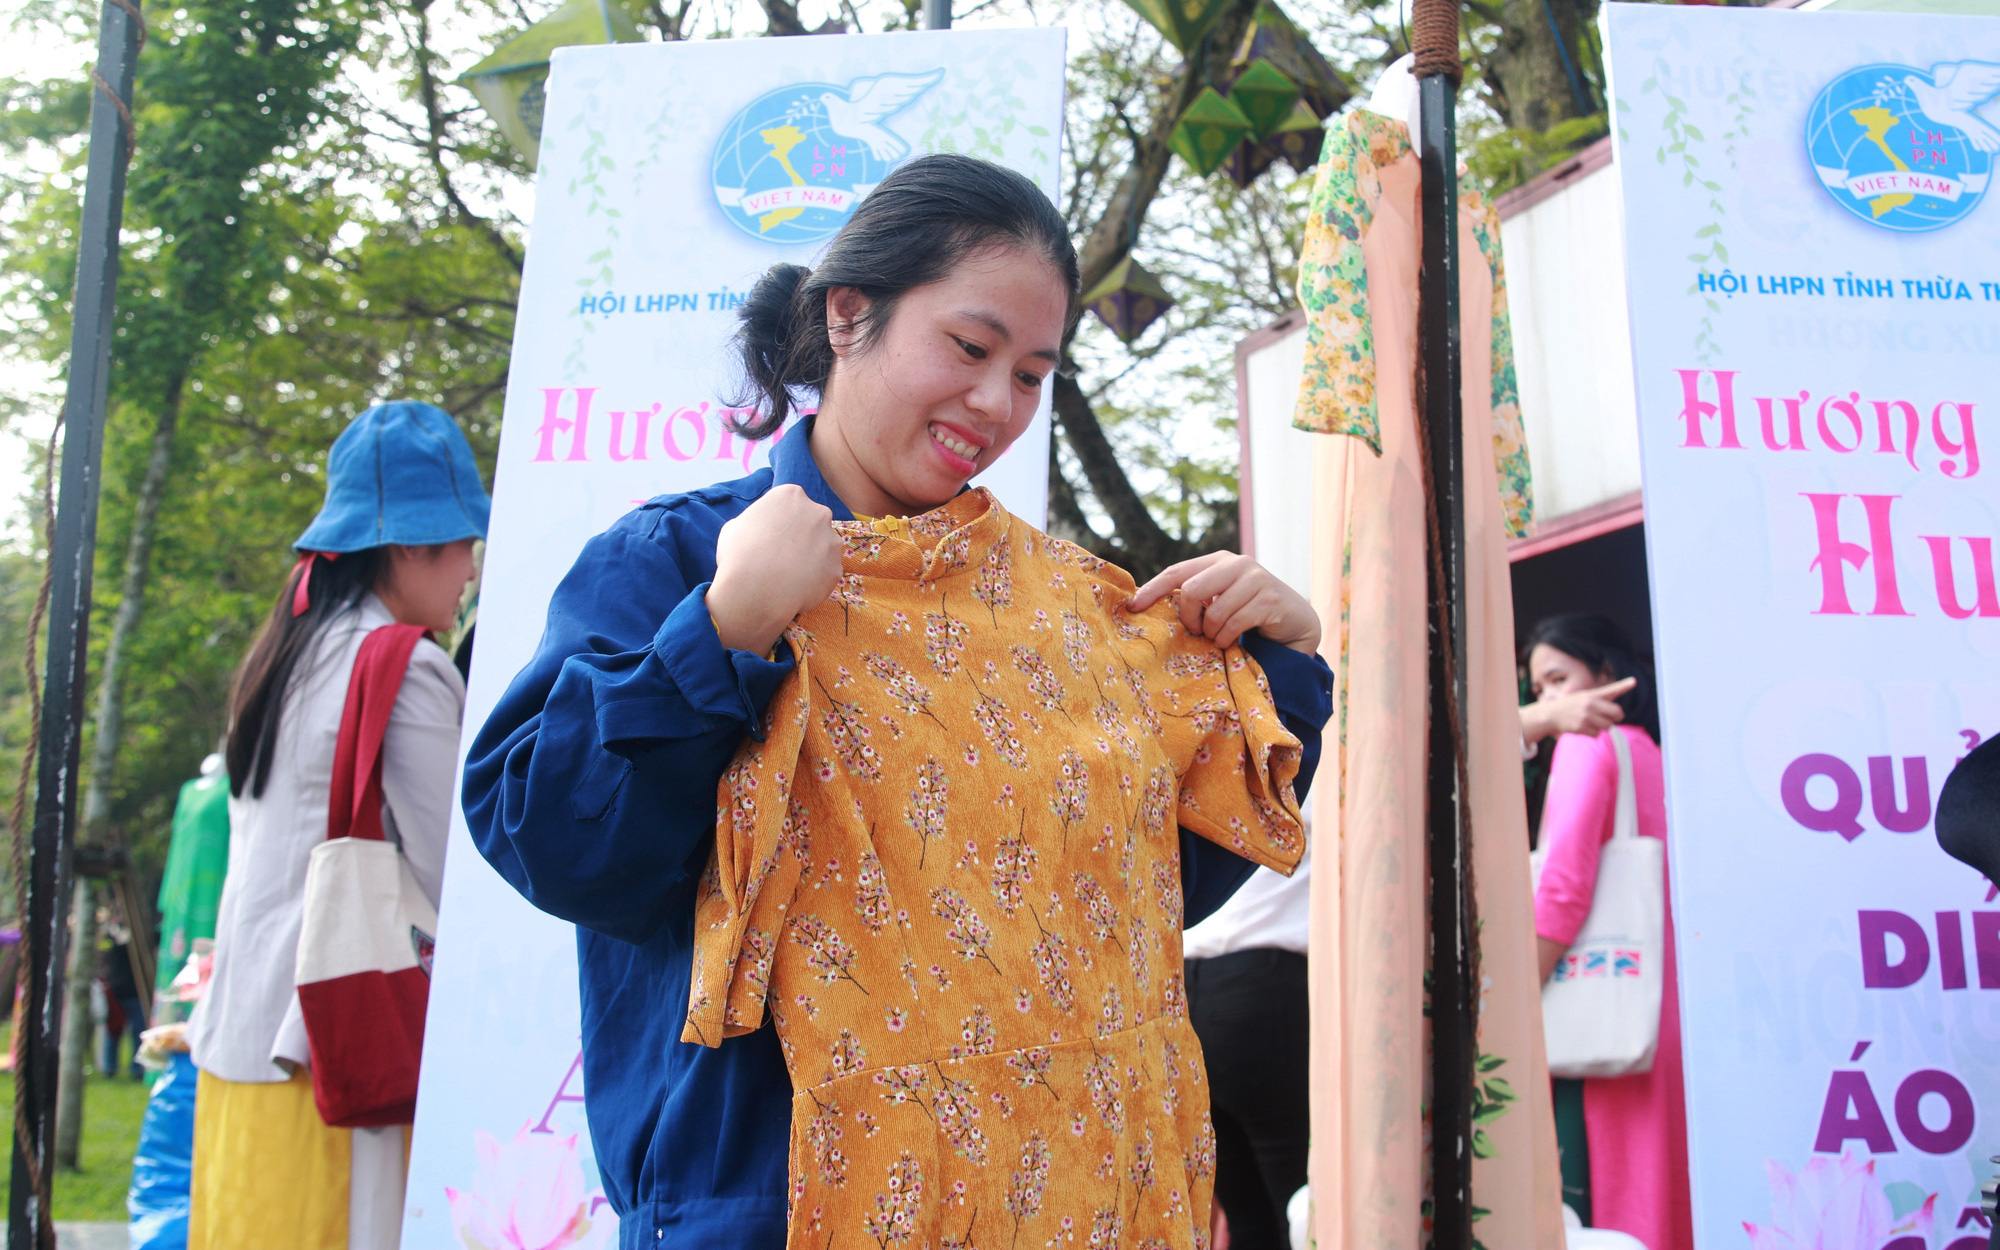 Hơn 2.000 bộ áo dài được tặng cho phụ nữ khó khăn ở Huế